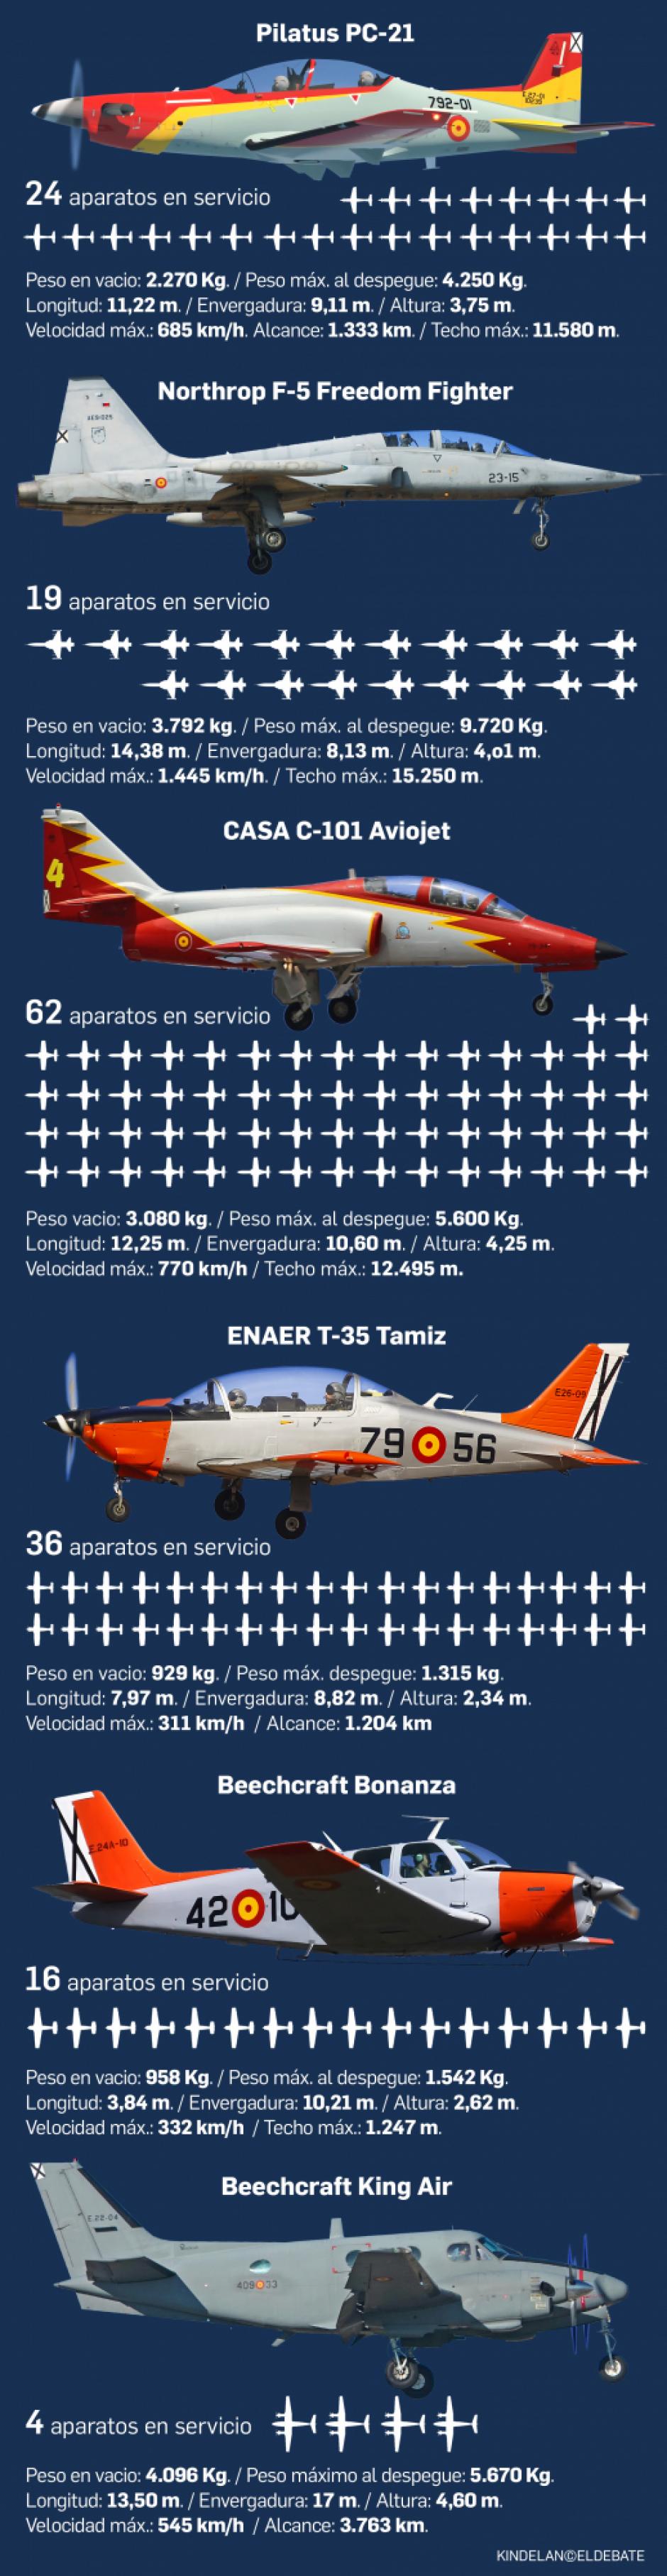 Fuerzas Aéreas españolas